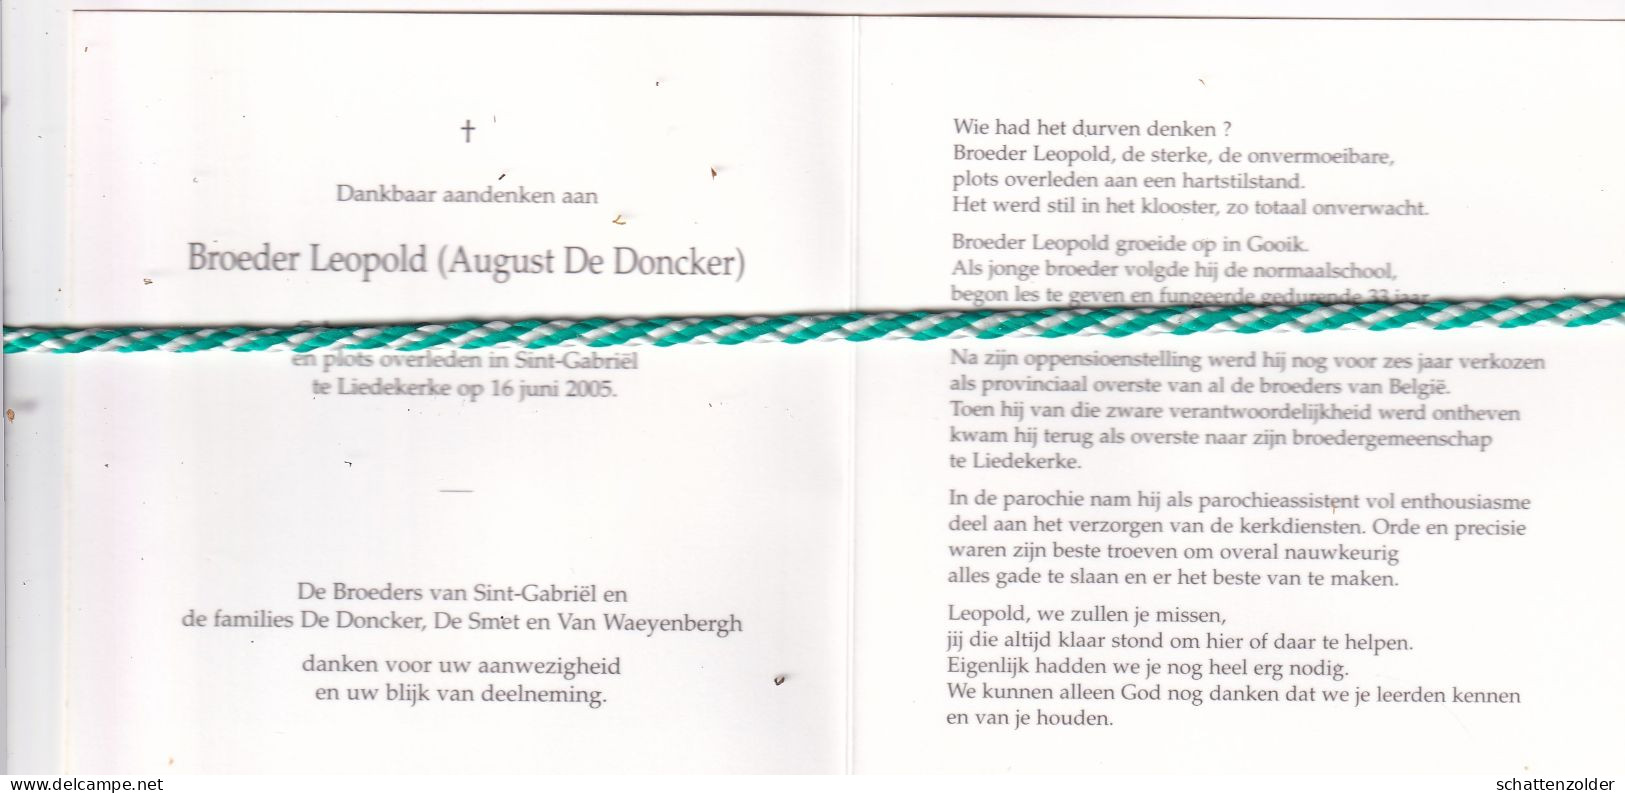 Broeder Leopold (August De Doncker), Gooik 1931, Liedekerke 2005. Foto - Todesanzeige